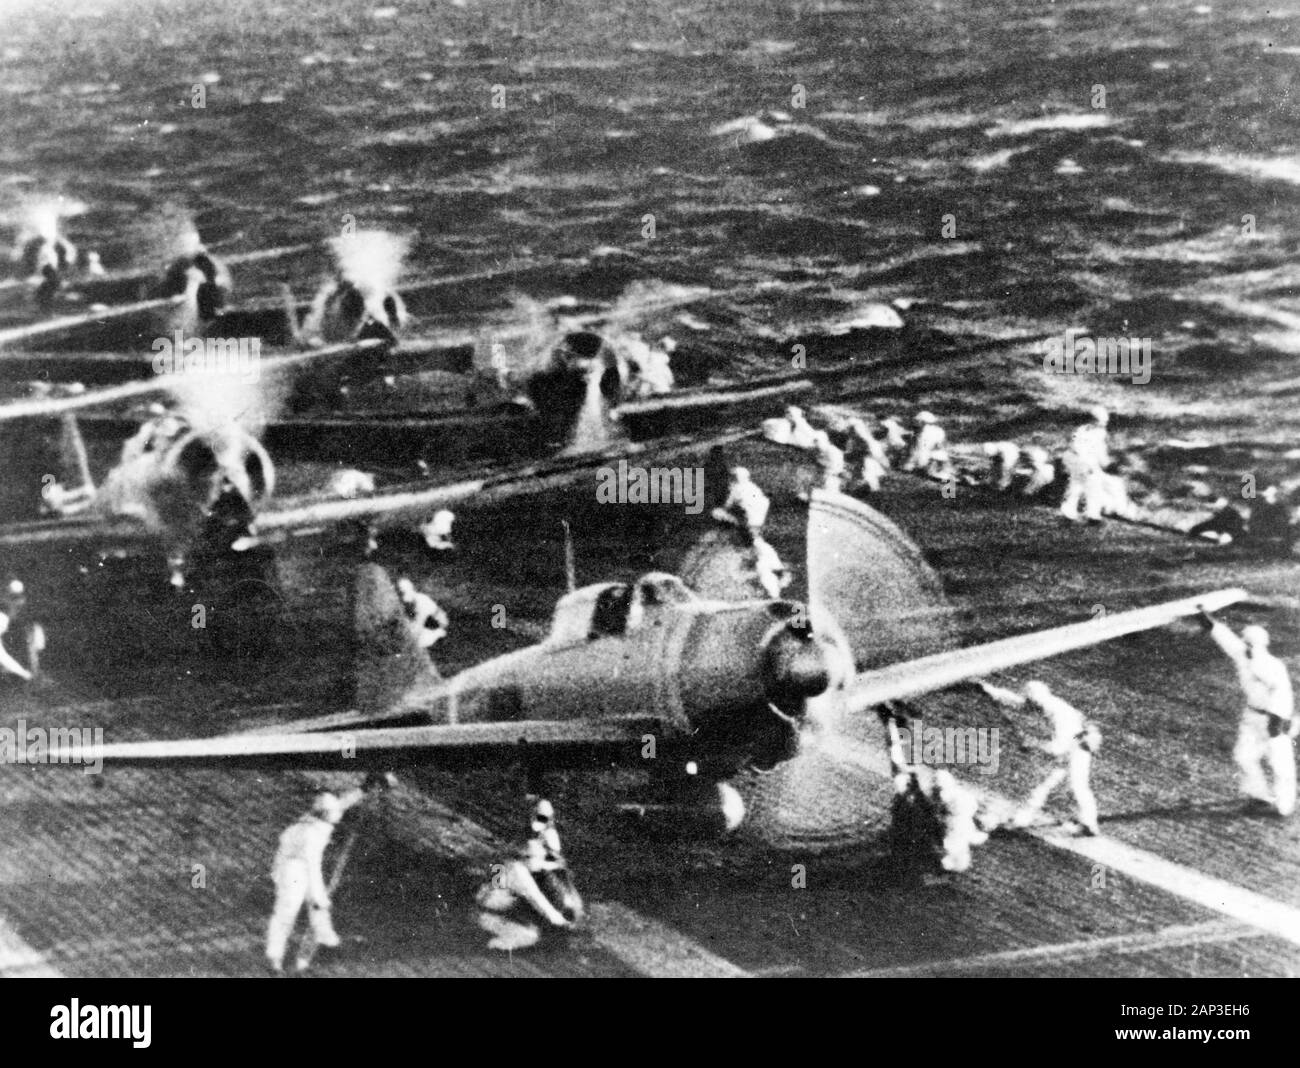 Pearl Harbor Angriff, vom 7. Dezember 1941. Japanese Naval Aircraft Vorbereiten von einem Flugzeugträger Shokaku (angeblich) Pearl Harbor am Morgen des 7. Dezember 1941 in Angriff zu nehmen. Ebene im Vordergrund ist ein 'Null'-Fighter, vor "Val" dive Bomber. Dies ist wahrscheinlich der Start der zweiten Angriff Wave. Stockfoto